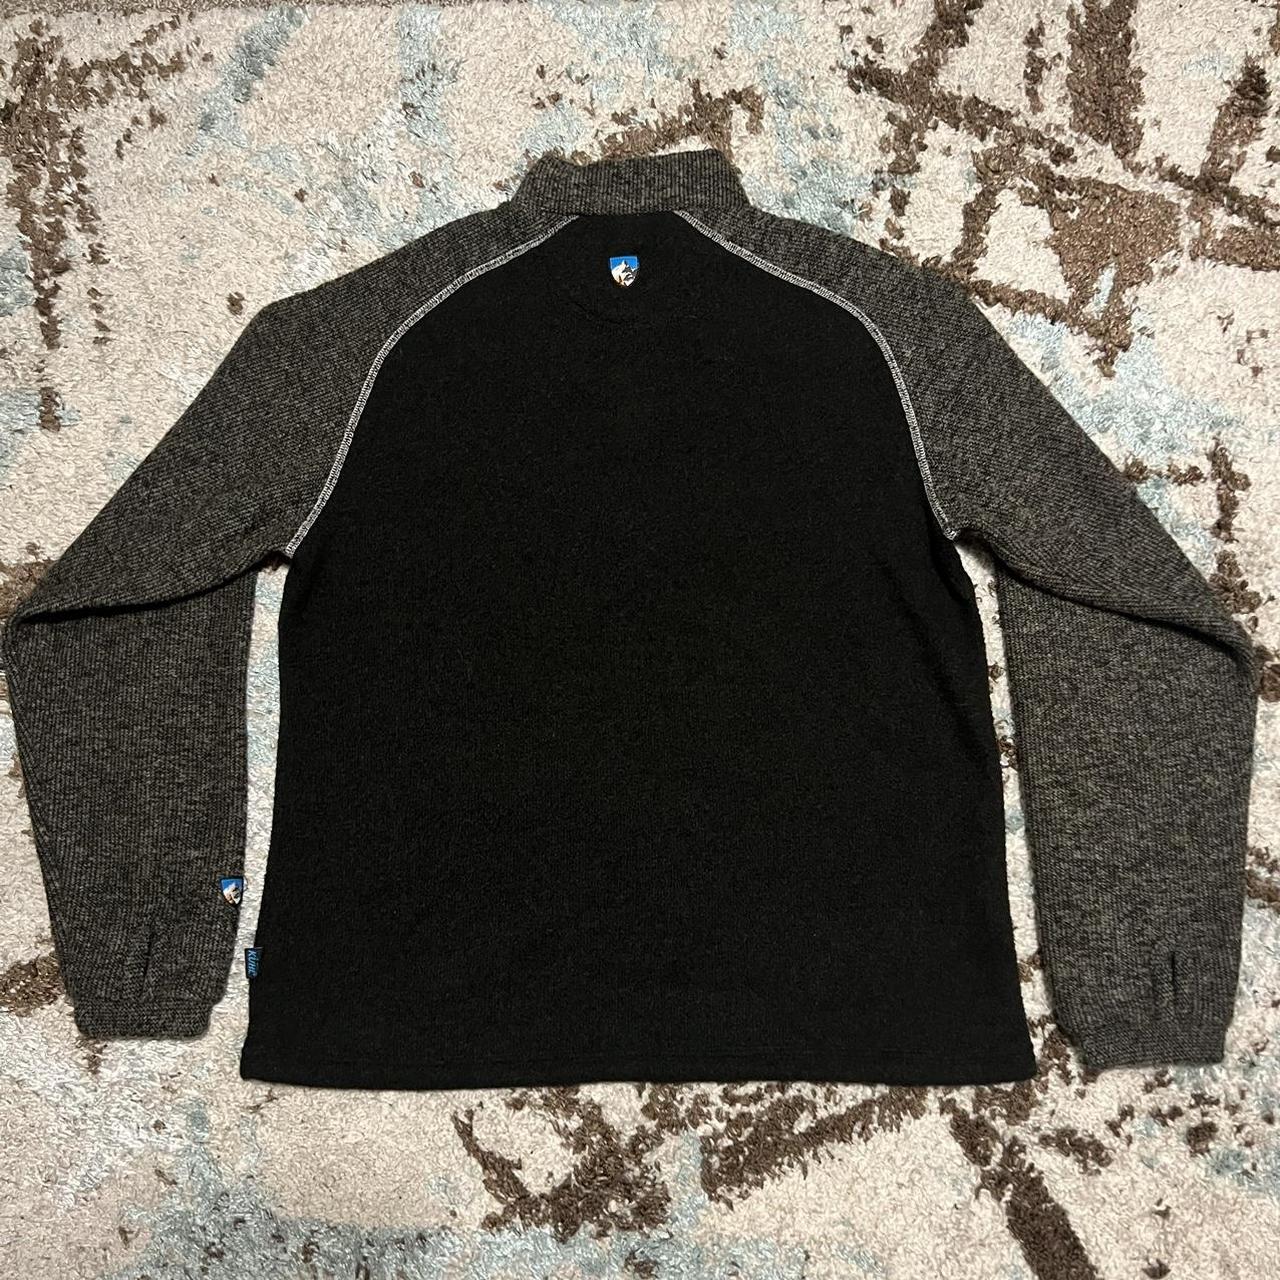 Kuhl Alfpaca Fleece Pullover Sweater 1/4 Zip Black - Depop